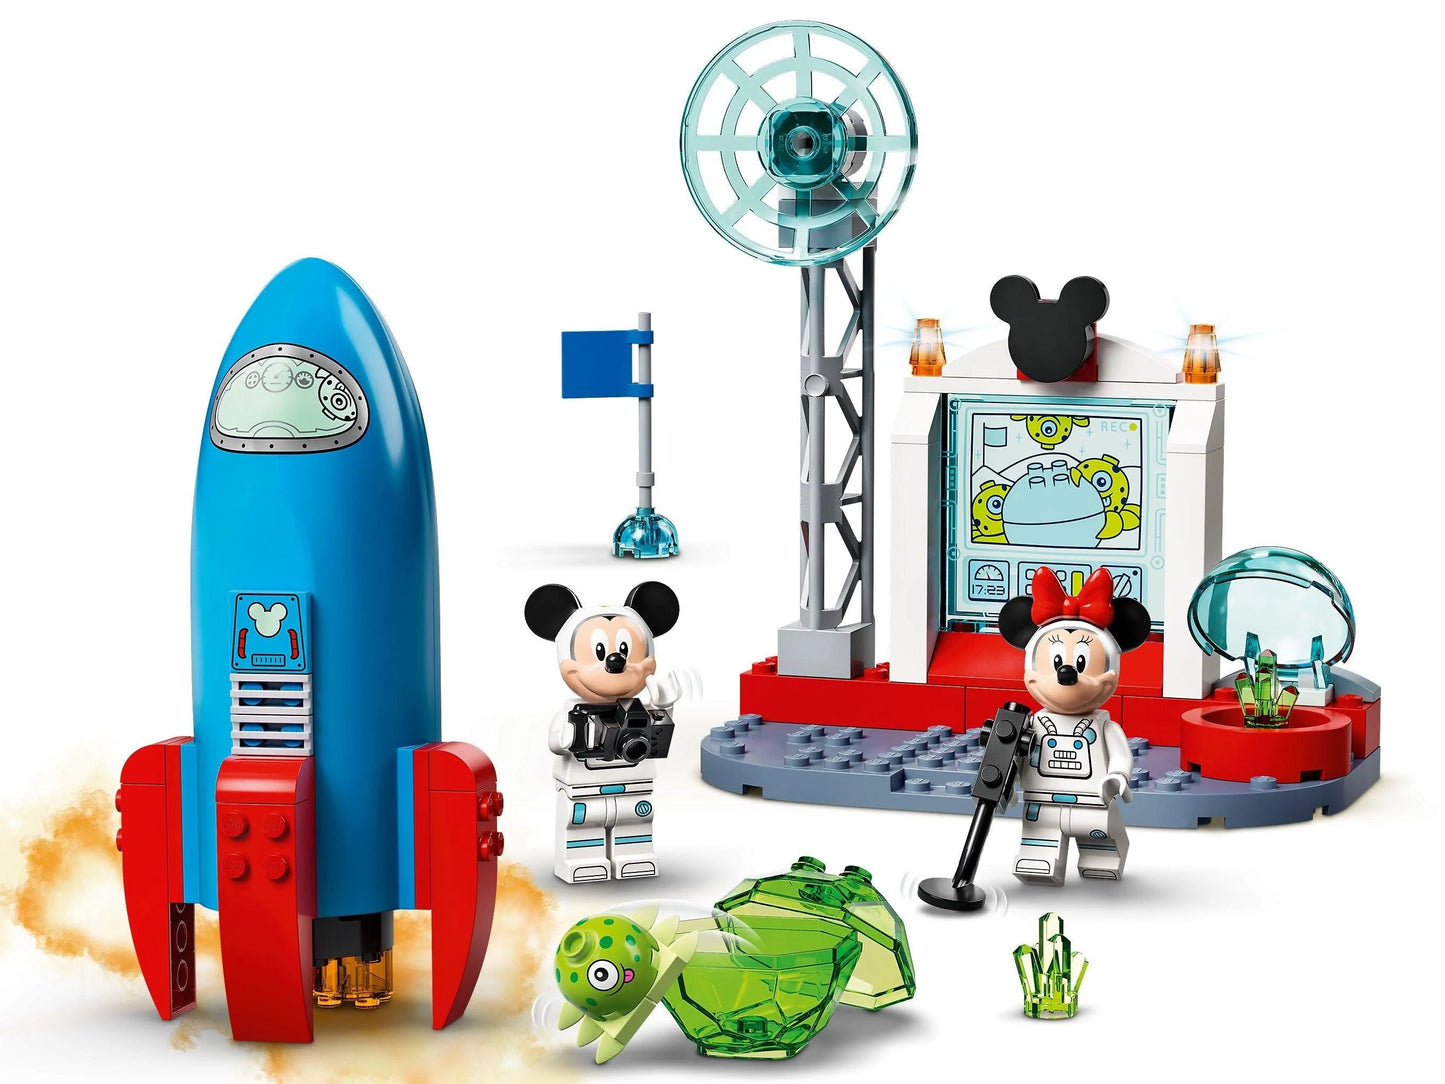 LEGO® Disney 10774 Mickys und Minnies Weltraumrakete - 88 Teile - Peer Online Shop